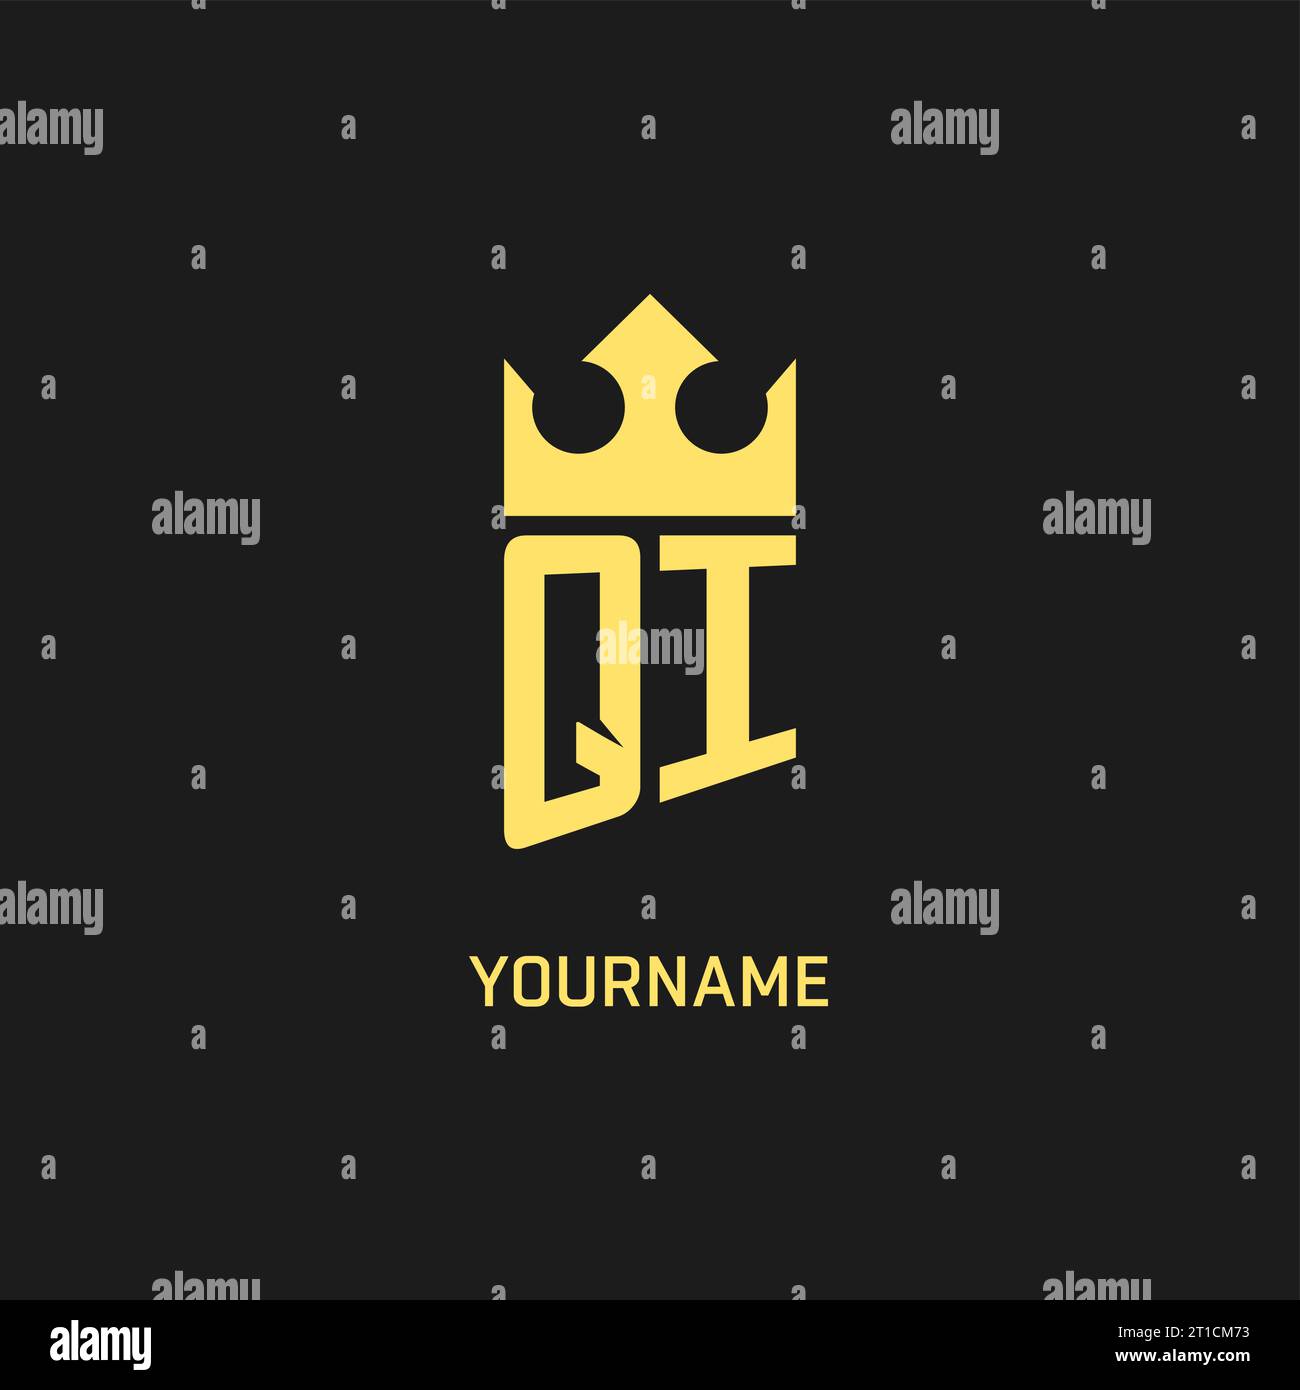 Monogram QI logo shield crown shape, elegant and luxury initial logo ...